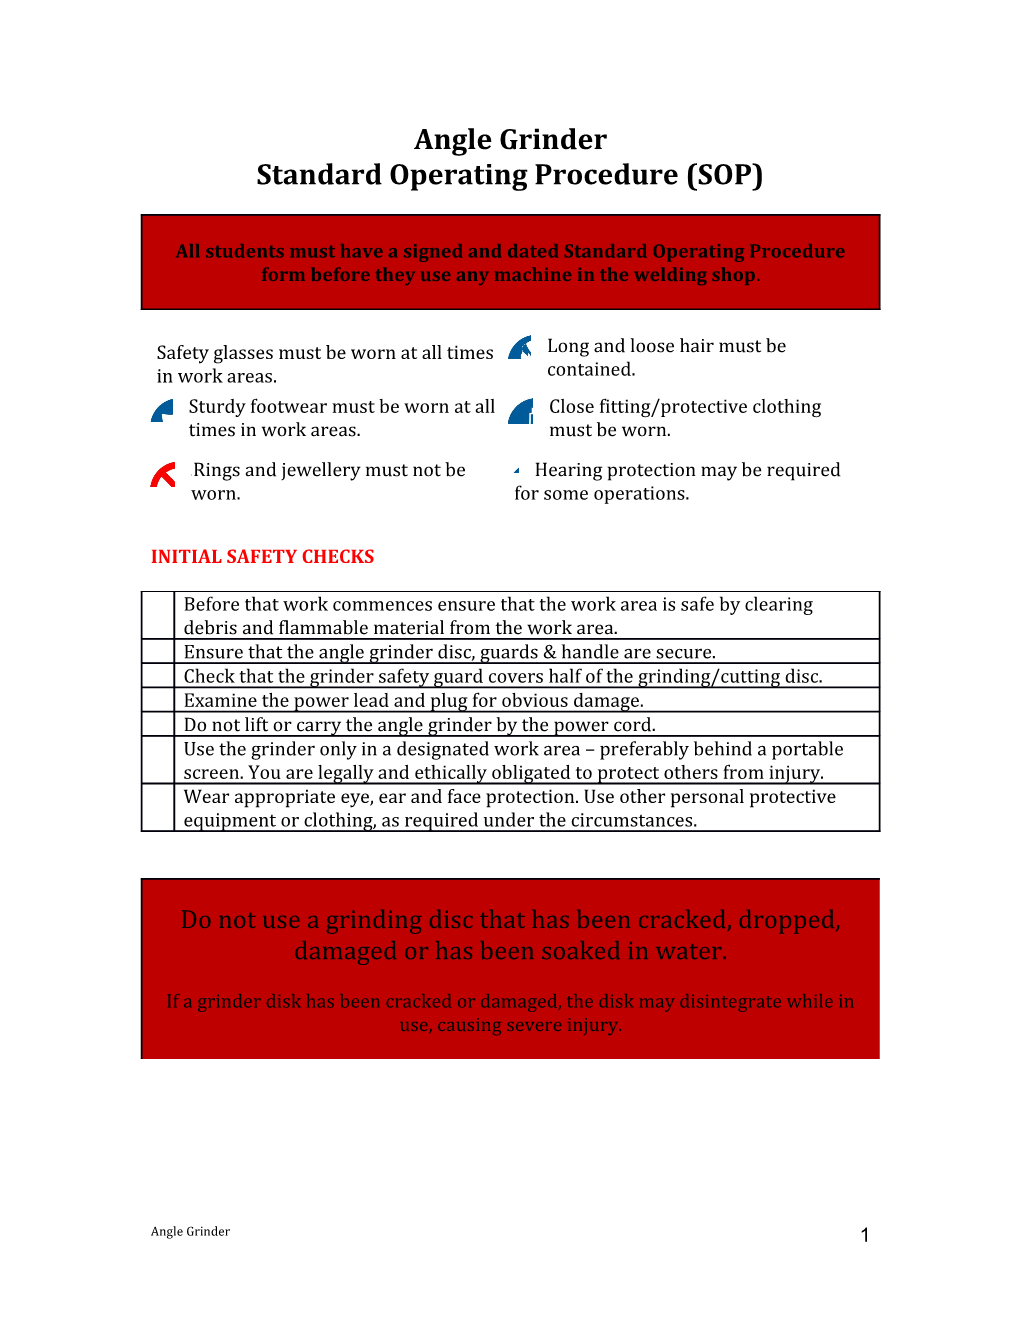 Standard Operating Procedure (SOP) s3